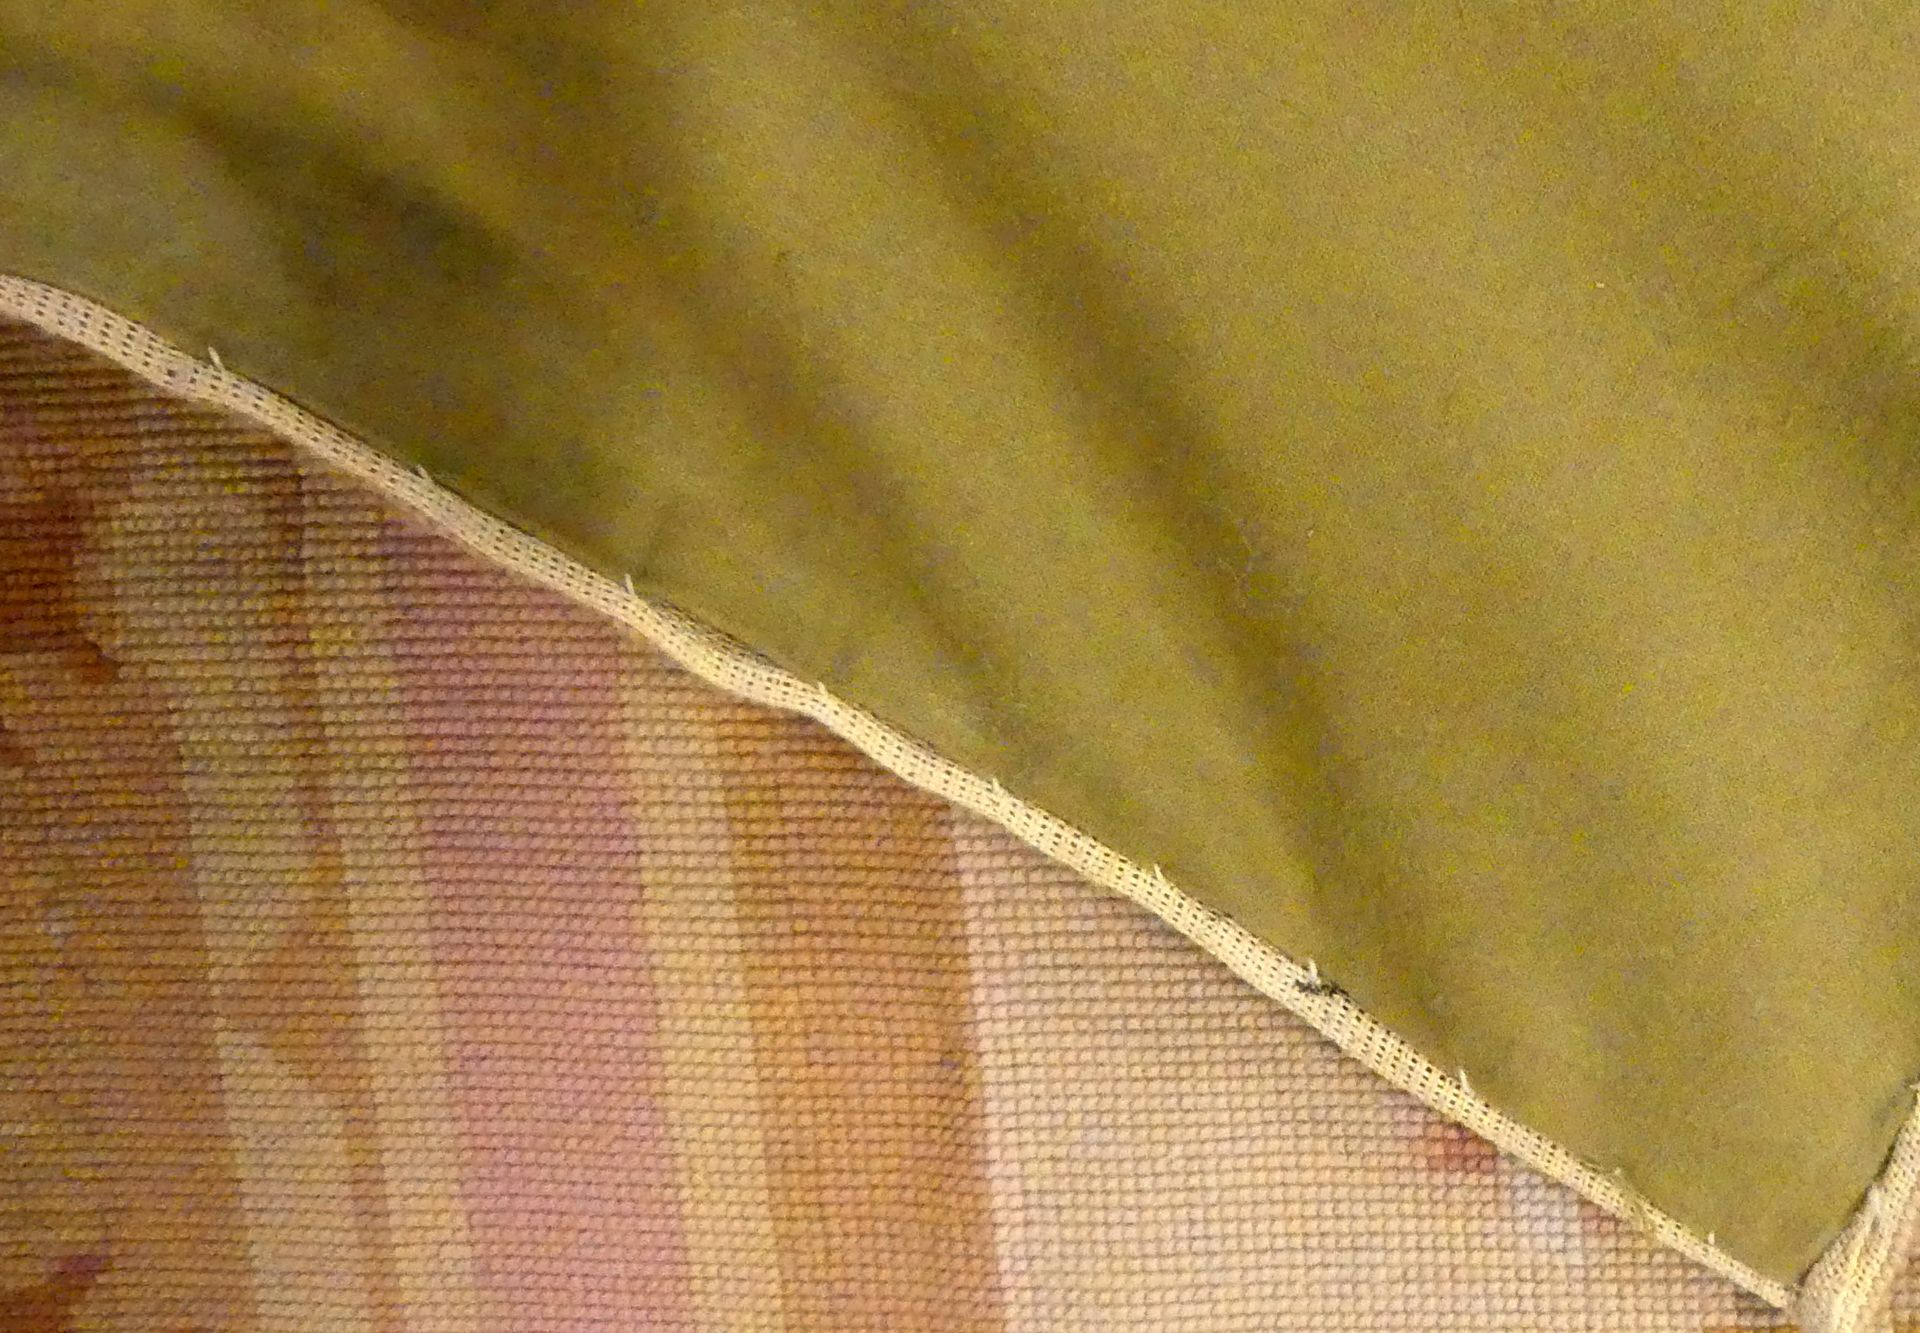 Aubusson-Teppich, Florales Design, beige/braun/rosafarben, - Bild 4 aus 4